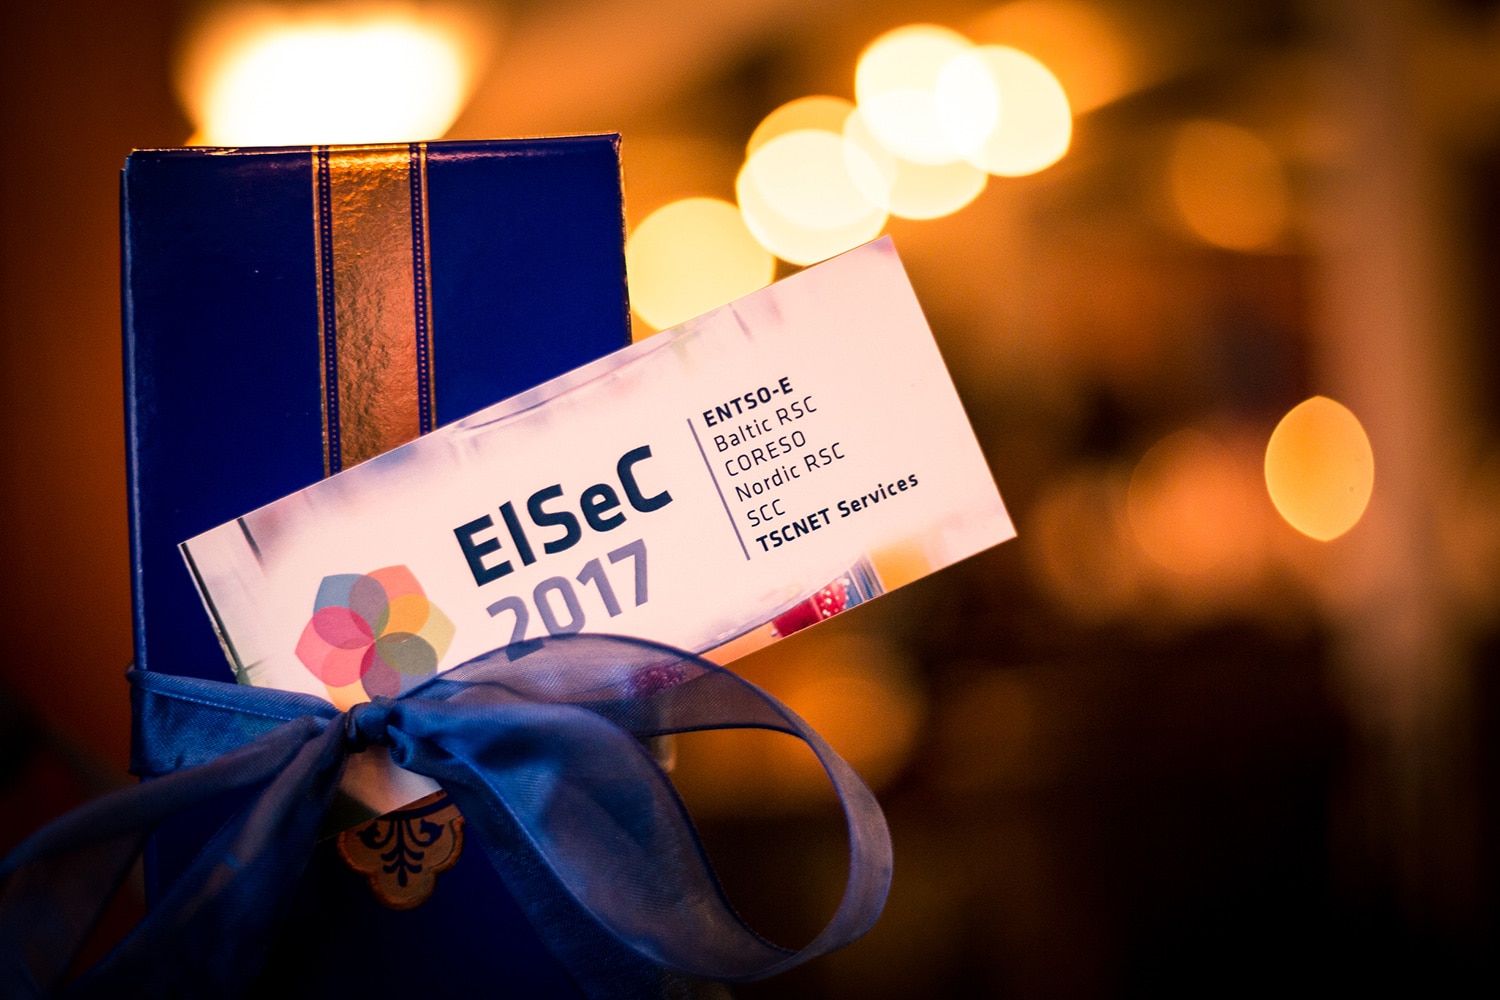 TSCNET ELSeC2017